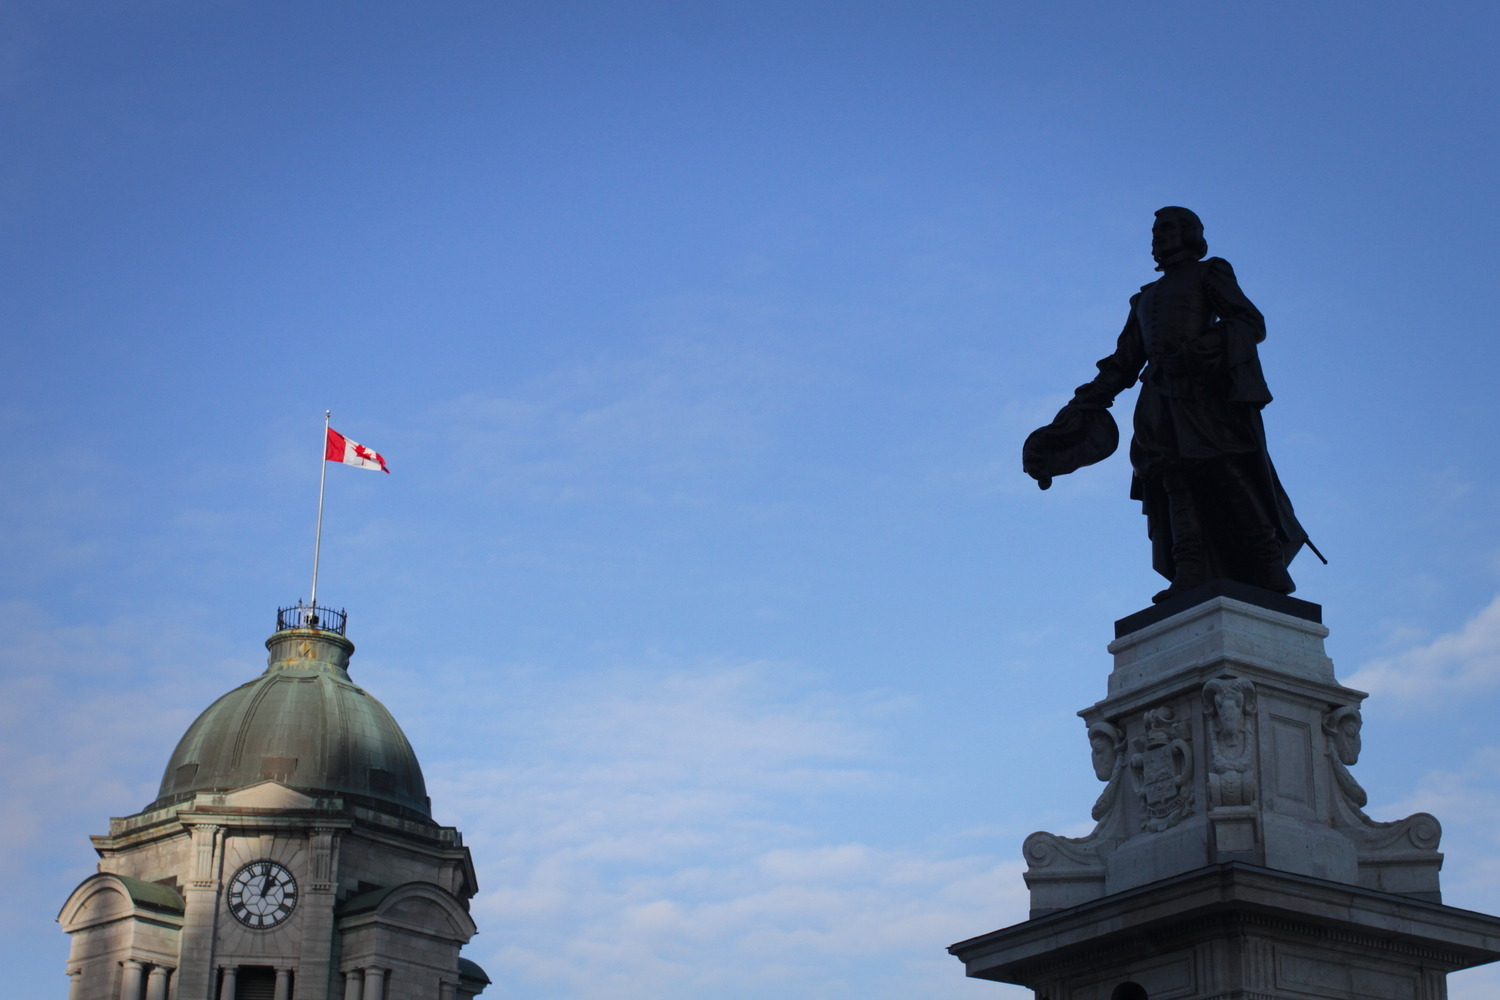 La statue de Samuel Champlain, fondateur de la ville de Québec en 1608. Il tourne le dos au Saint-Laurent pour montrer qu’il va s’installer ici.